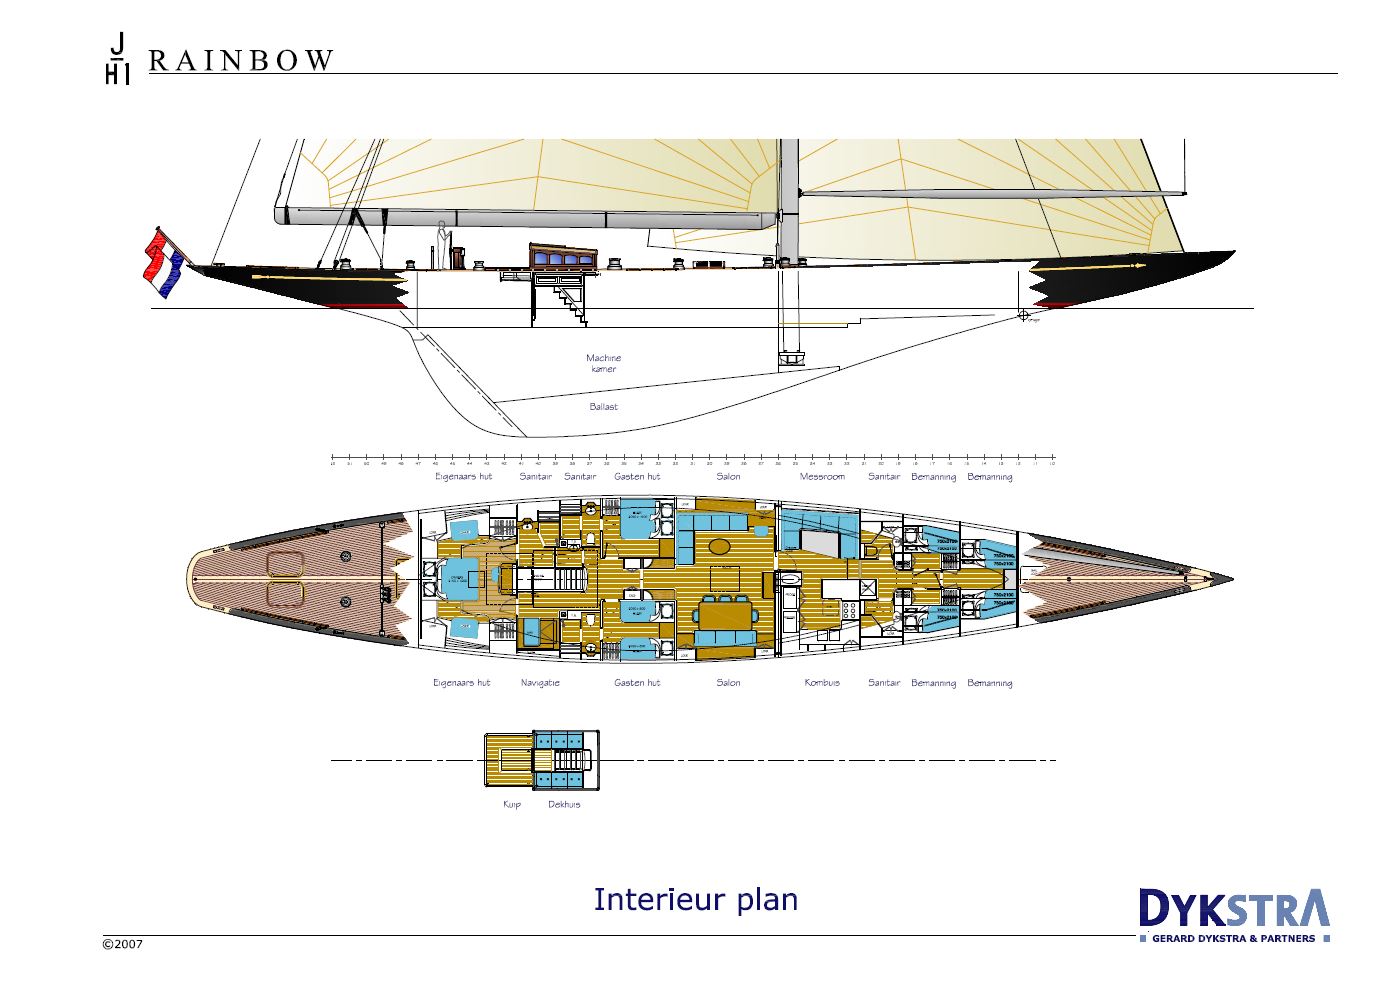 j class yachts plans